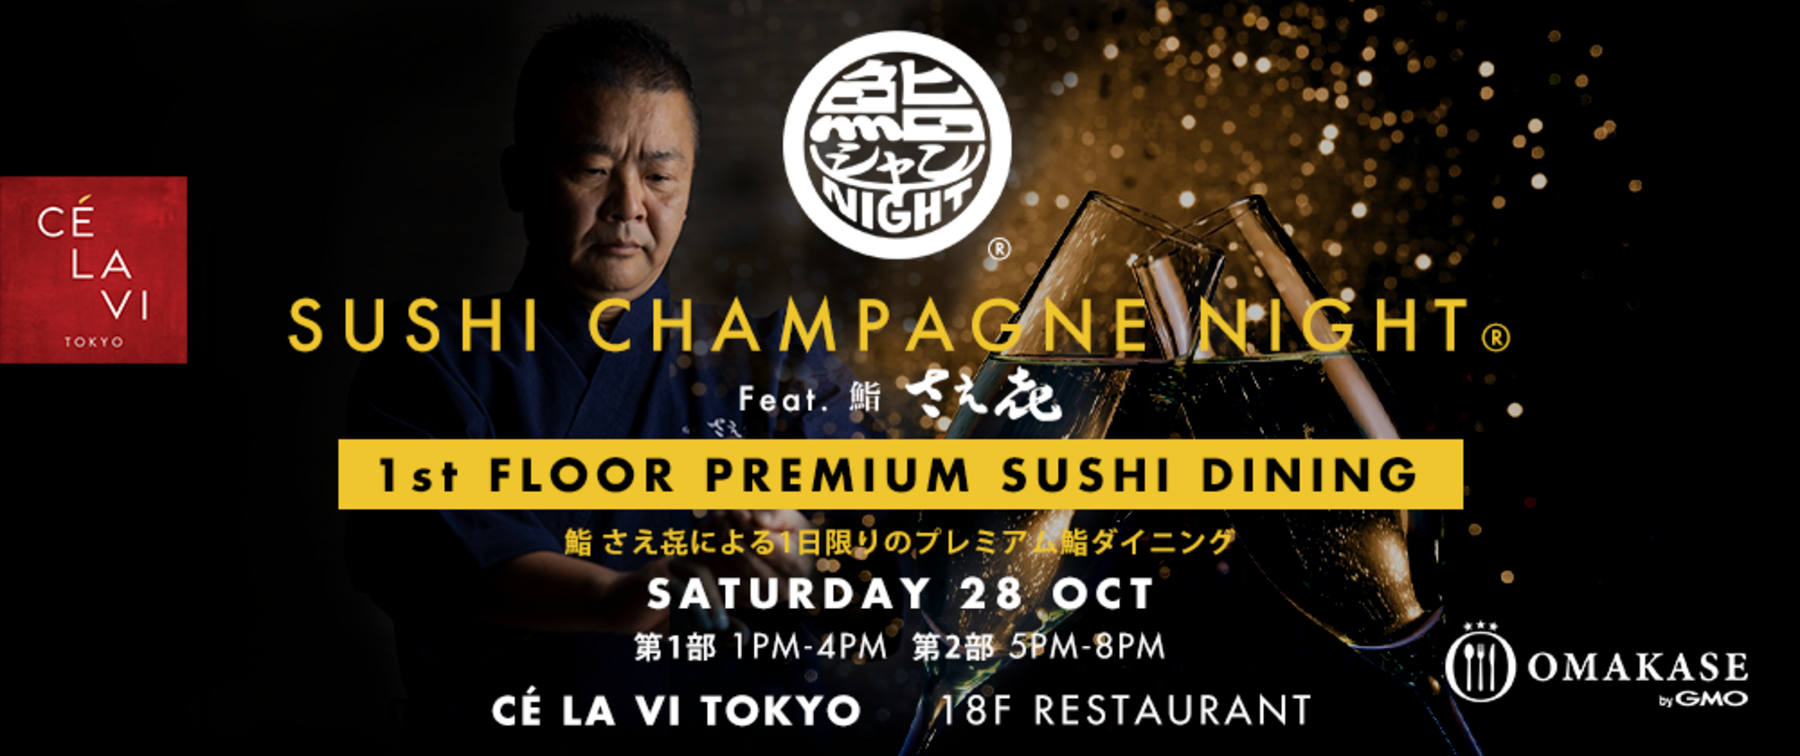 【Finished】SUSHI CHAMPAGNE NIGHT (Premium Sushi Dining)[Sushi Saeki]'s image